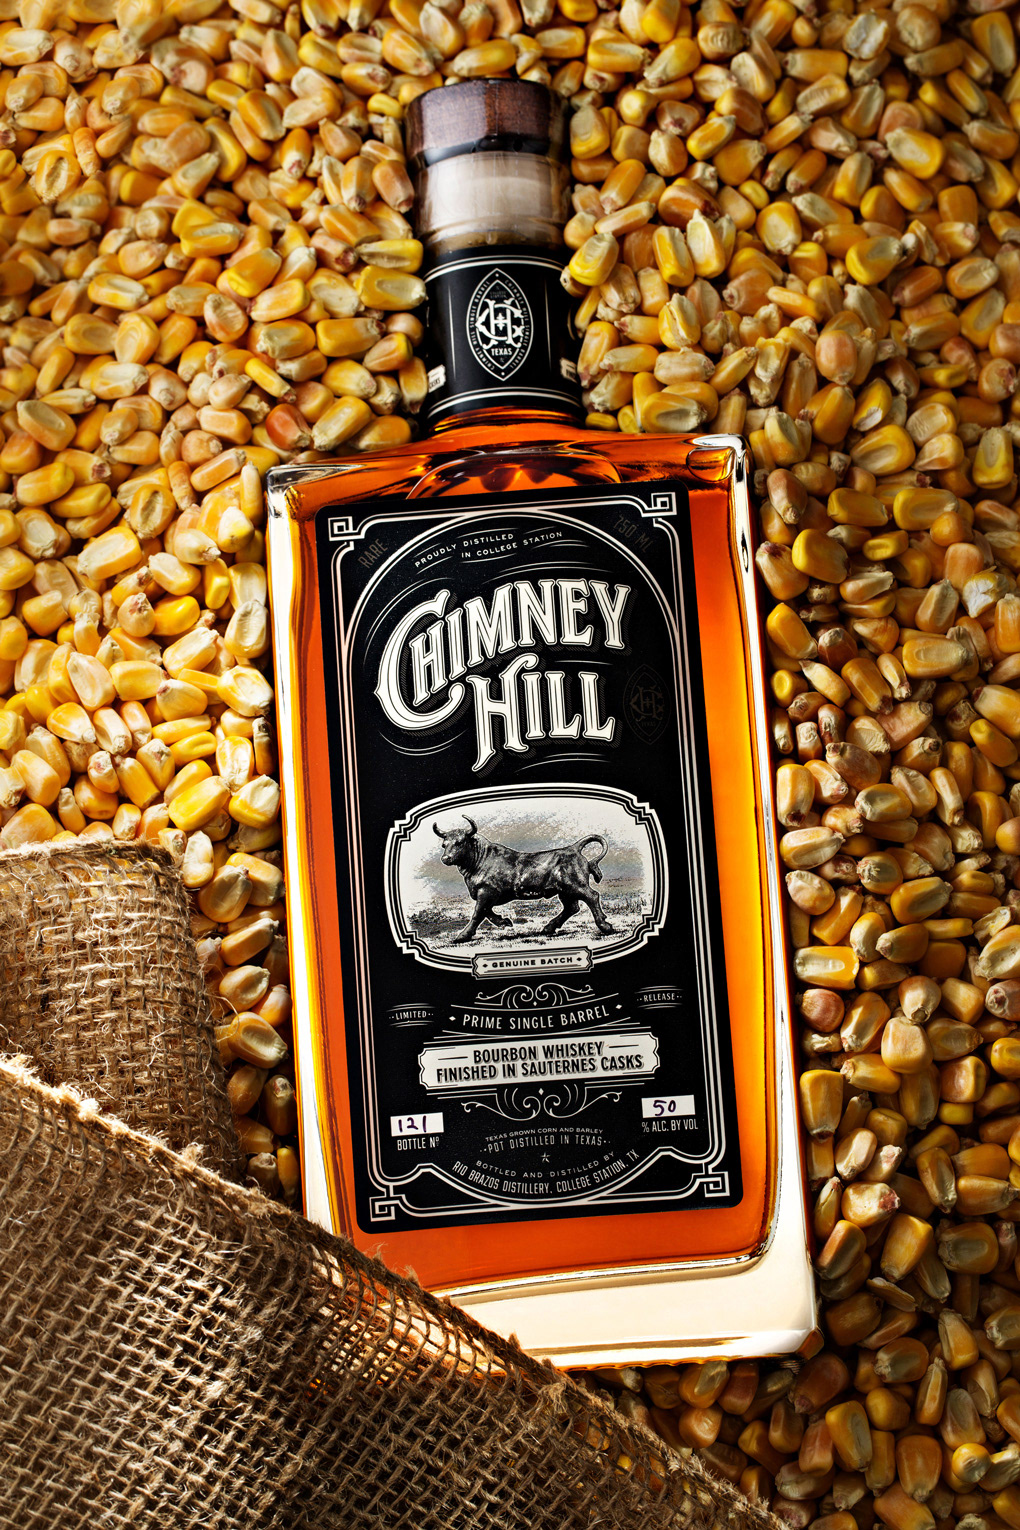 bourbon branding  label design packaging design Whiskey Whisky